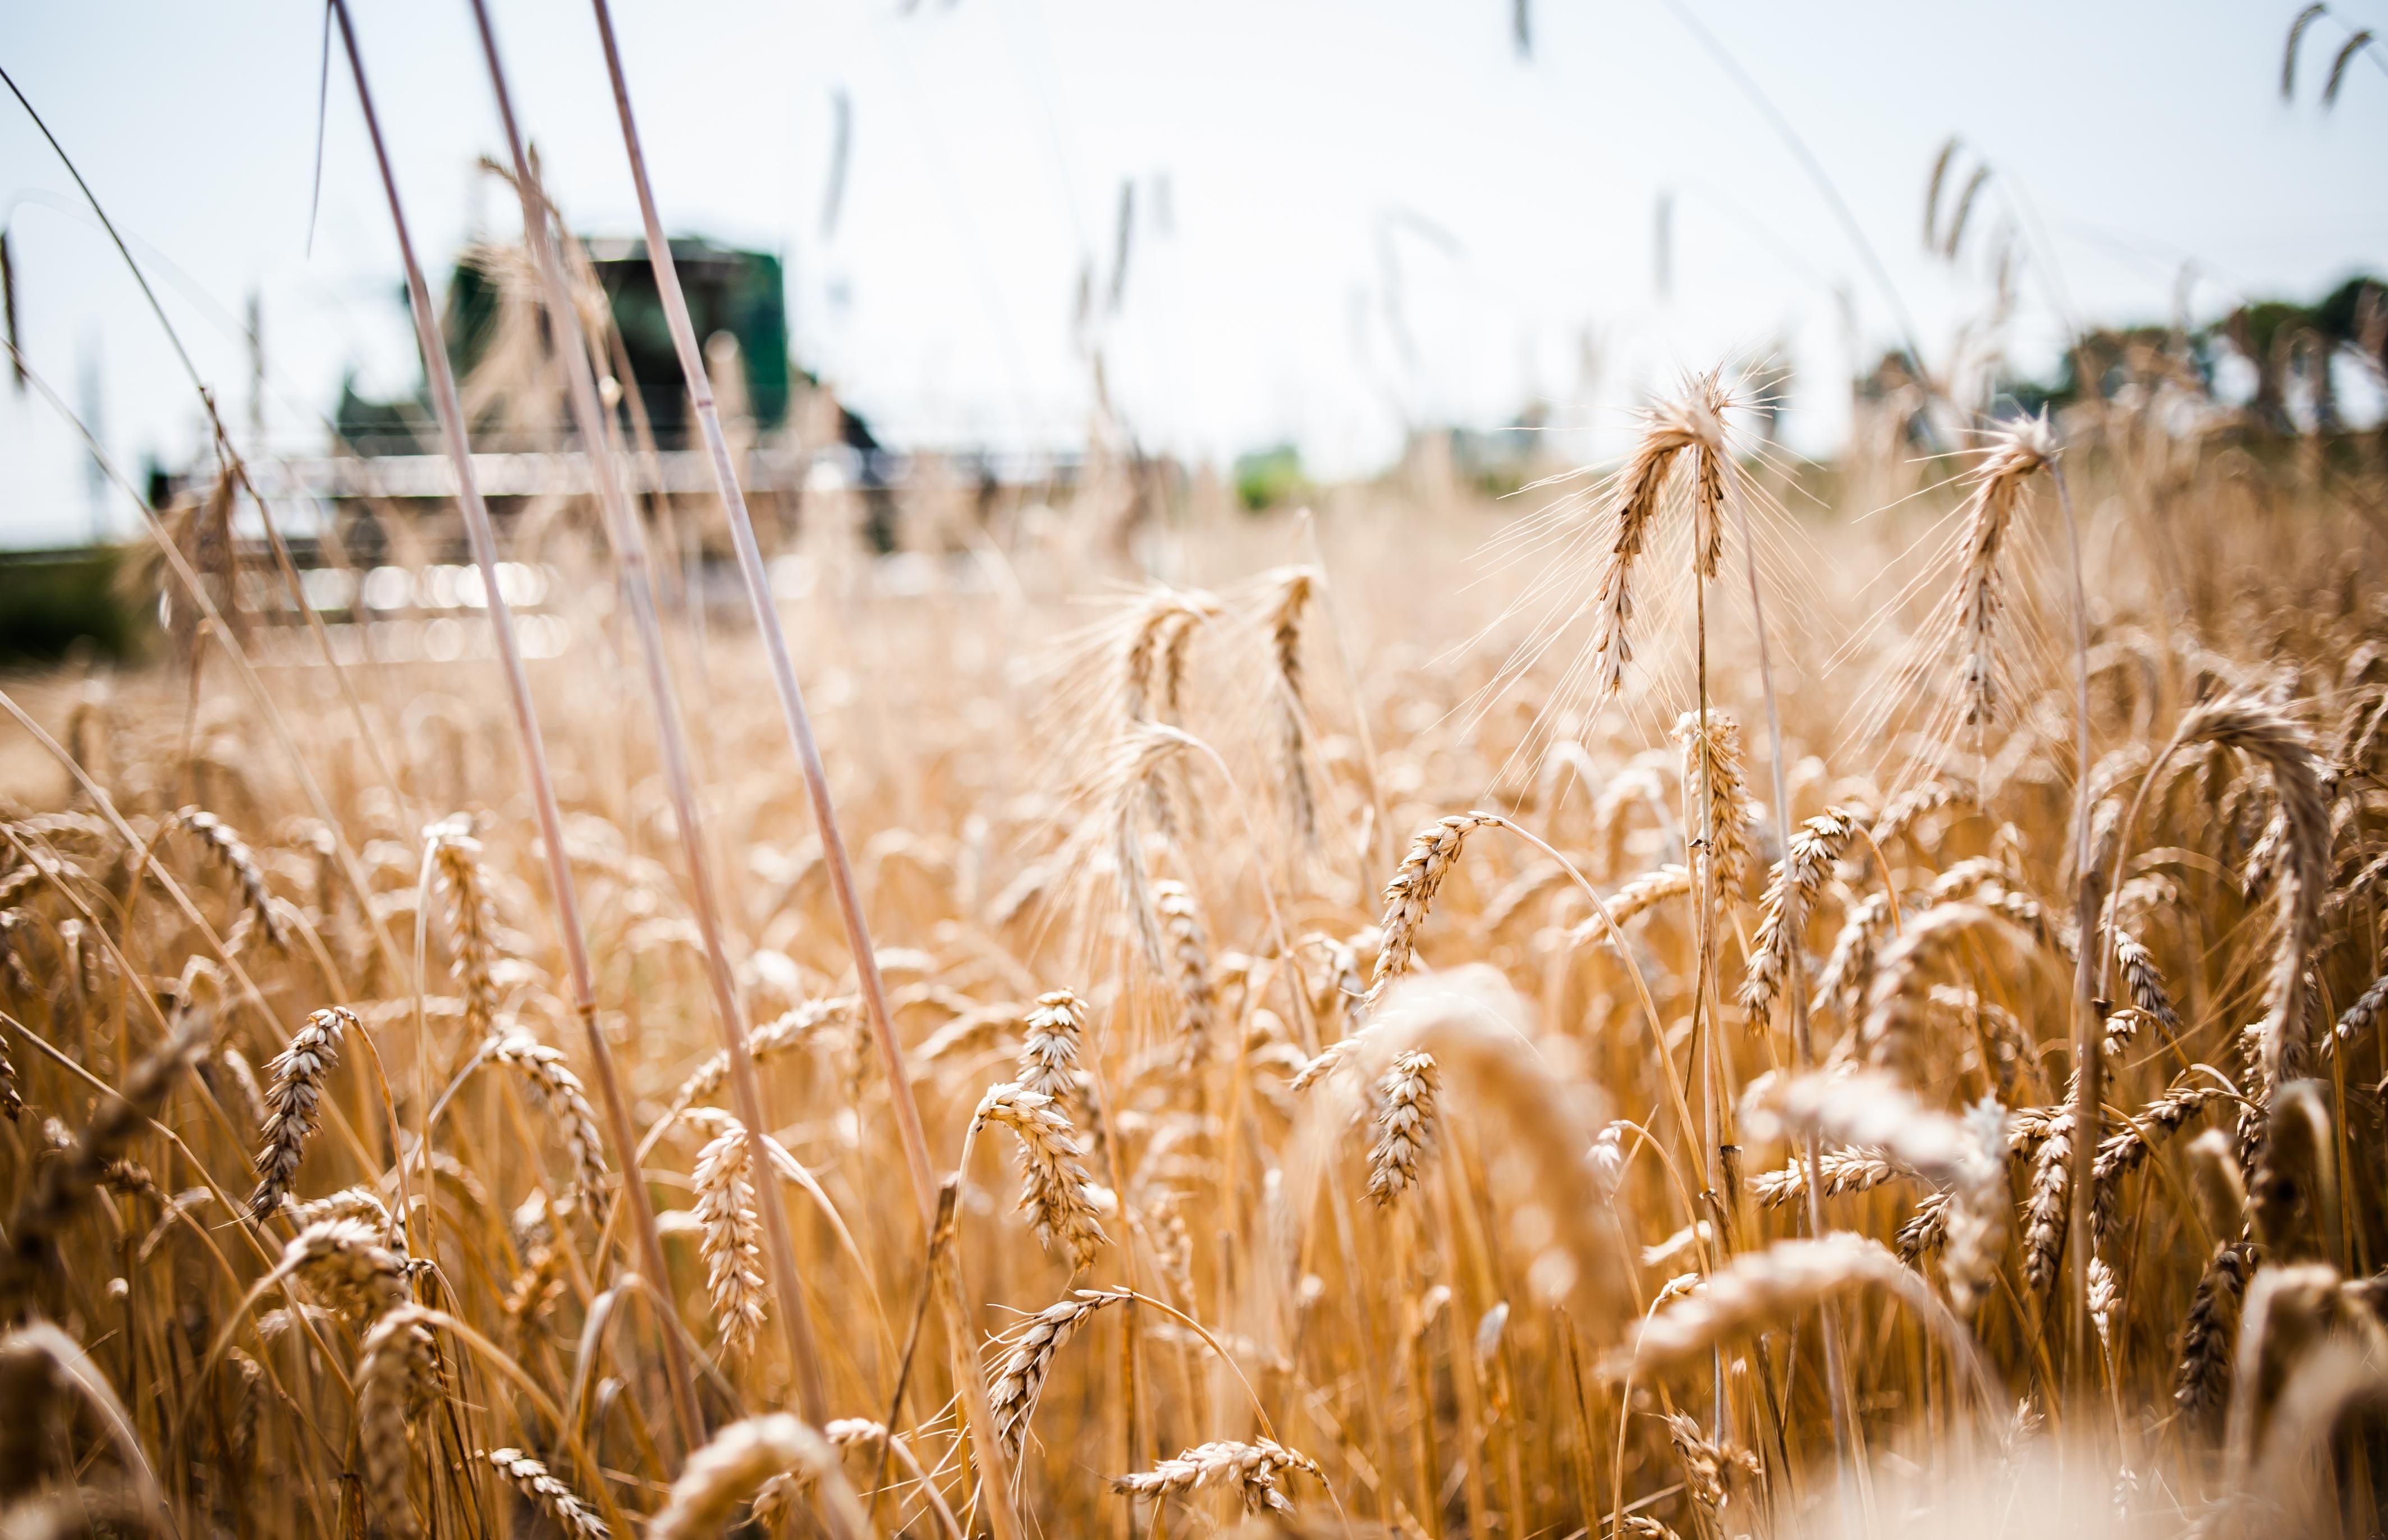 Україна у 2017 році експортувала рекордну кількість зерна: експерти озвучили цифри